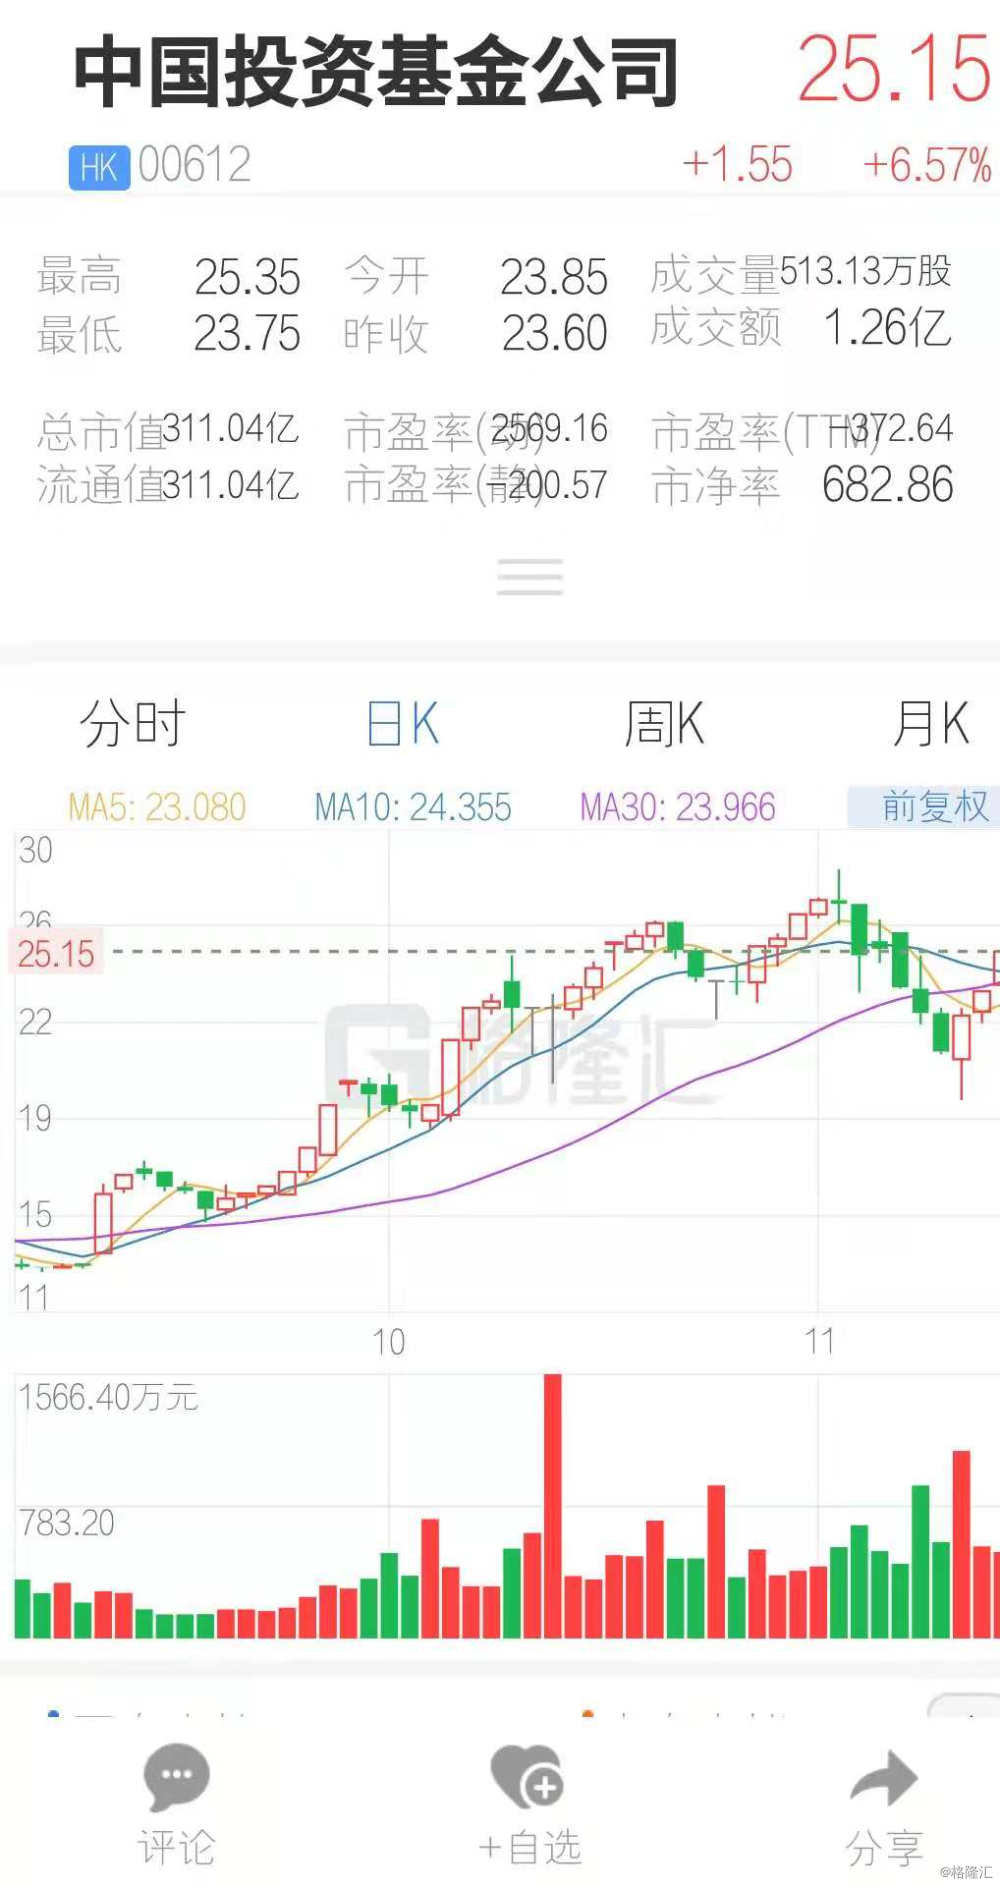 中国投资基金公司(00612.HK)连续三日反弹累涨18%